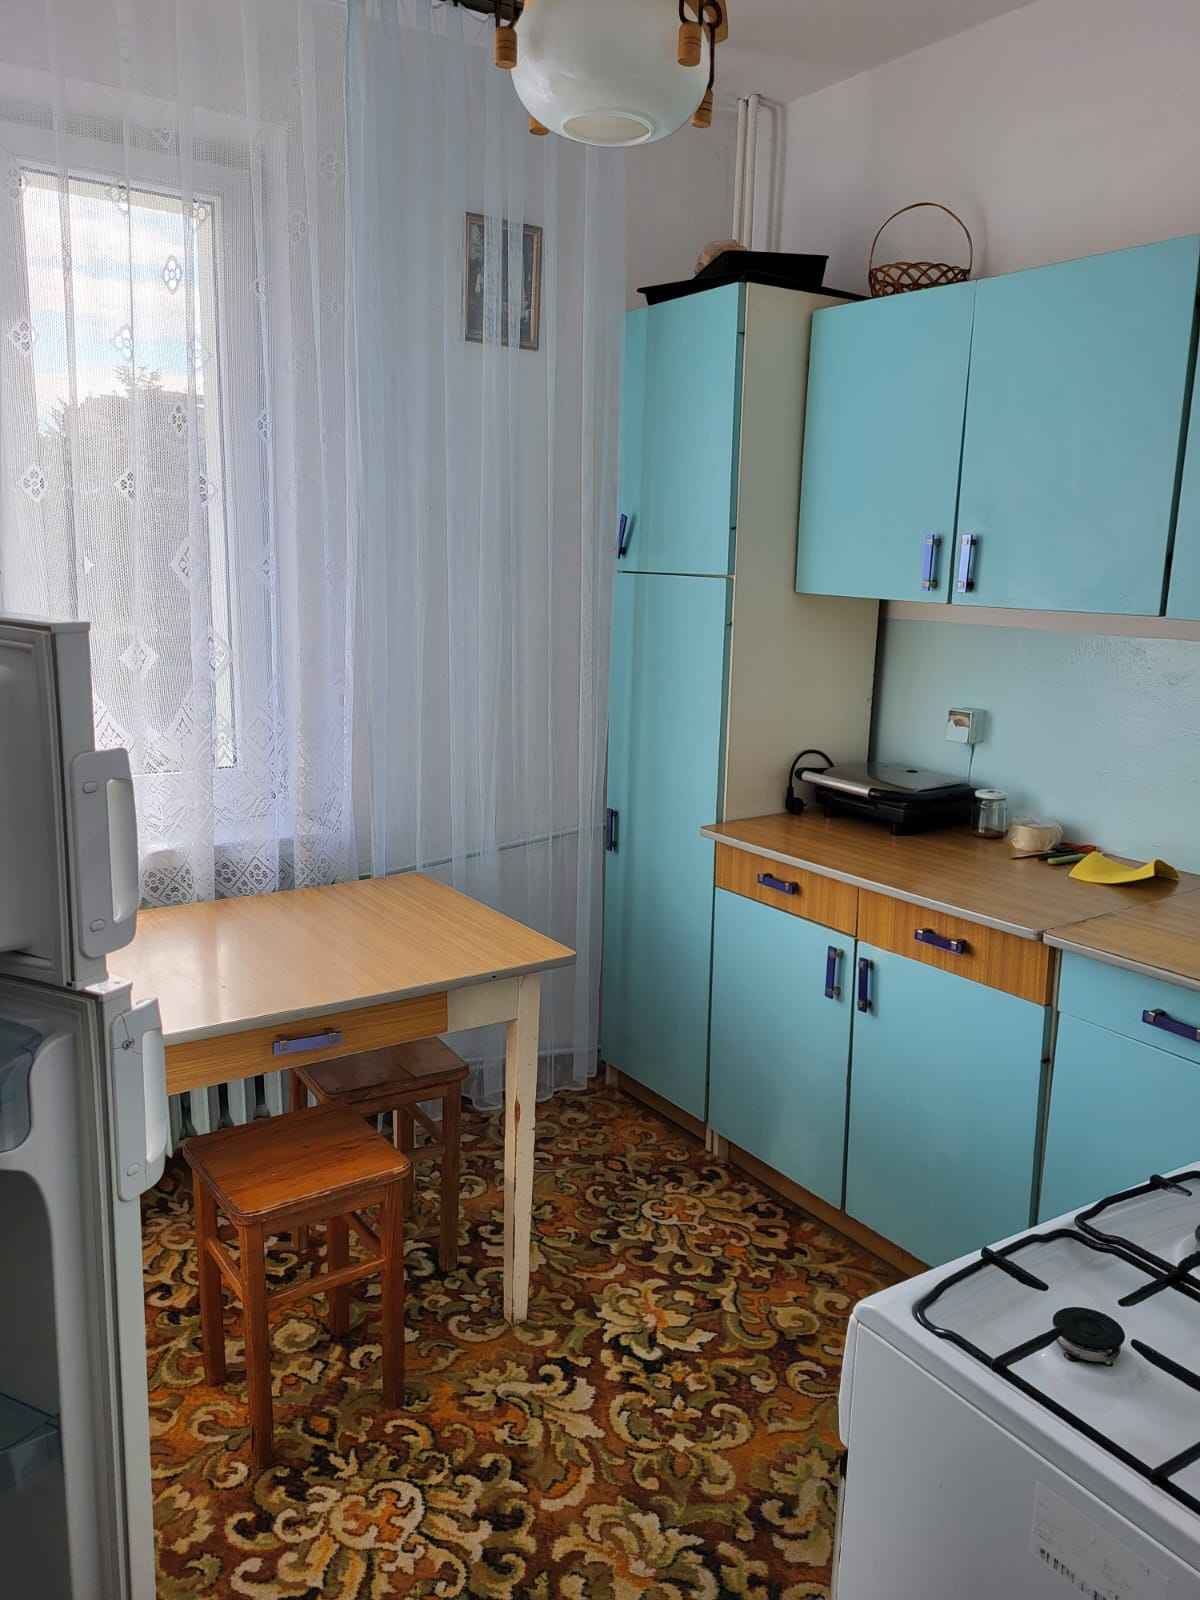 Pokoje/stancja (mieszkanie 3 pokojowe + kuchnia),  w Zamościu Zamość - zdjęcie 2